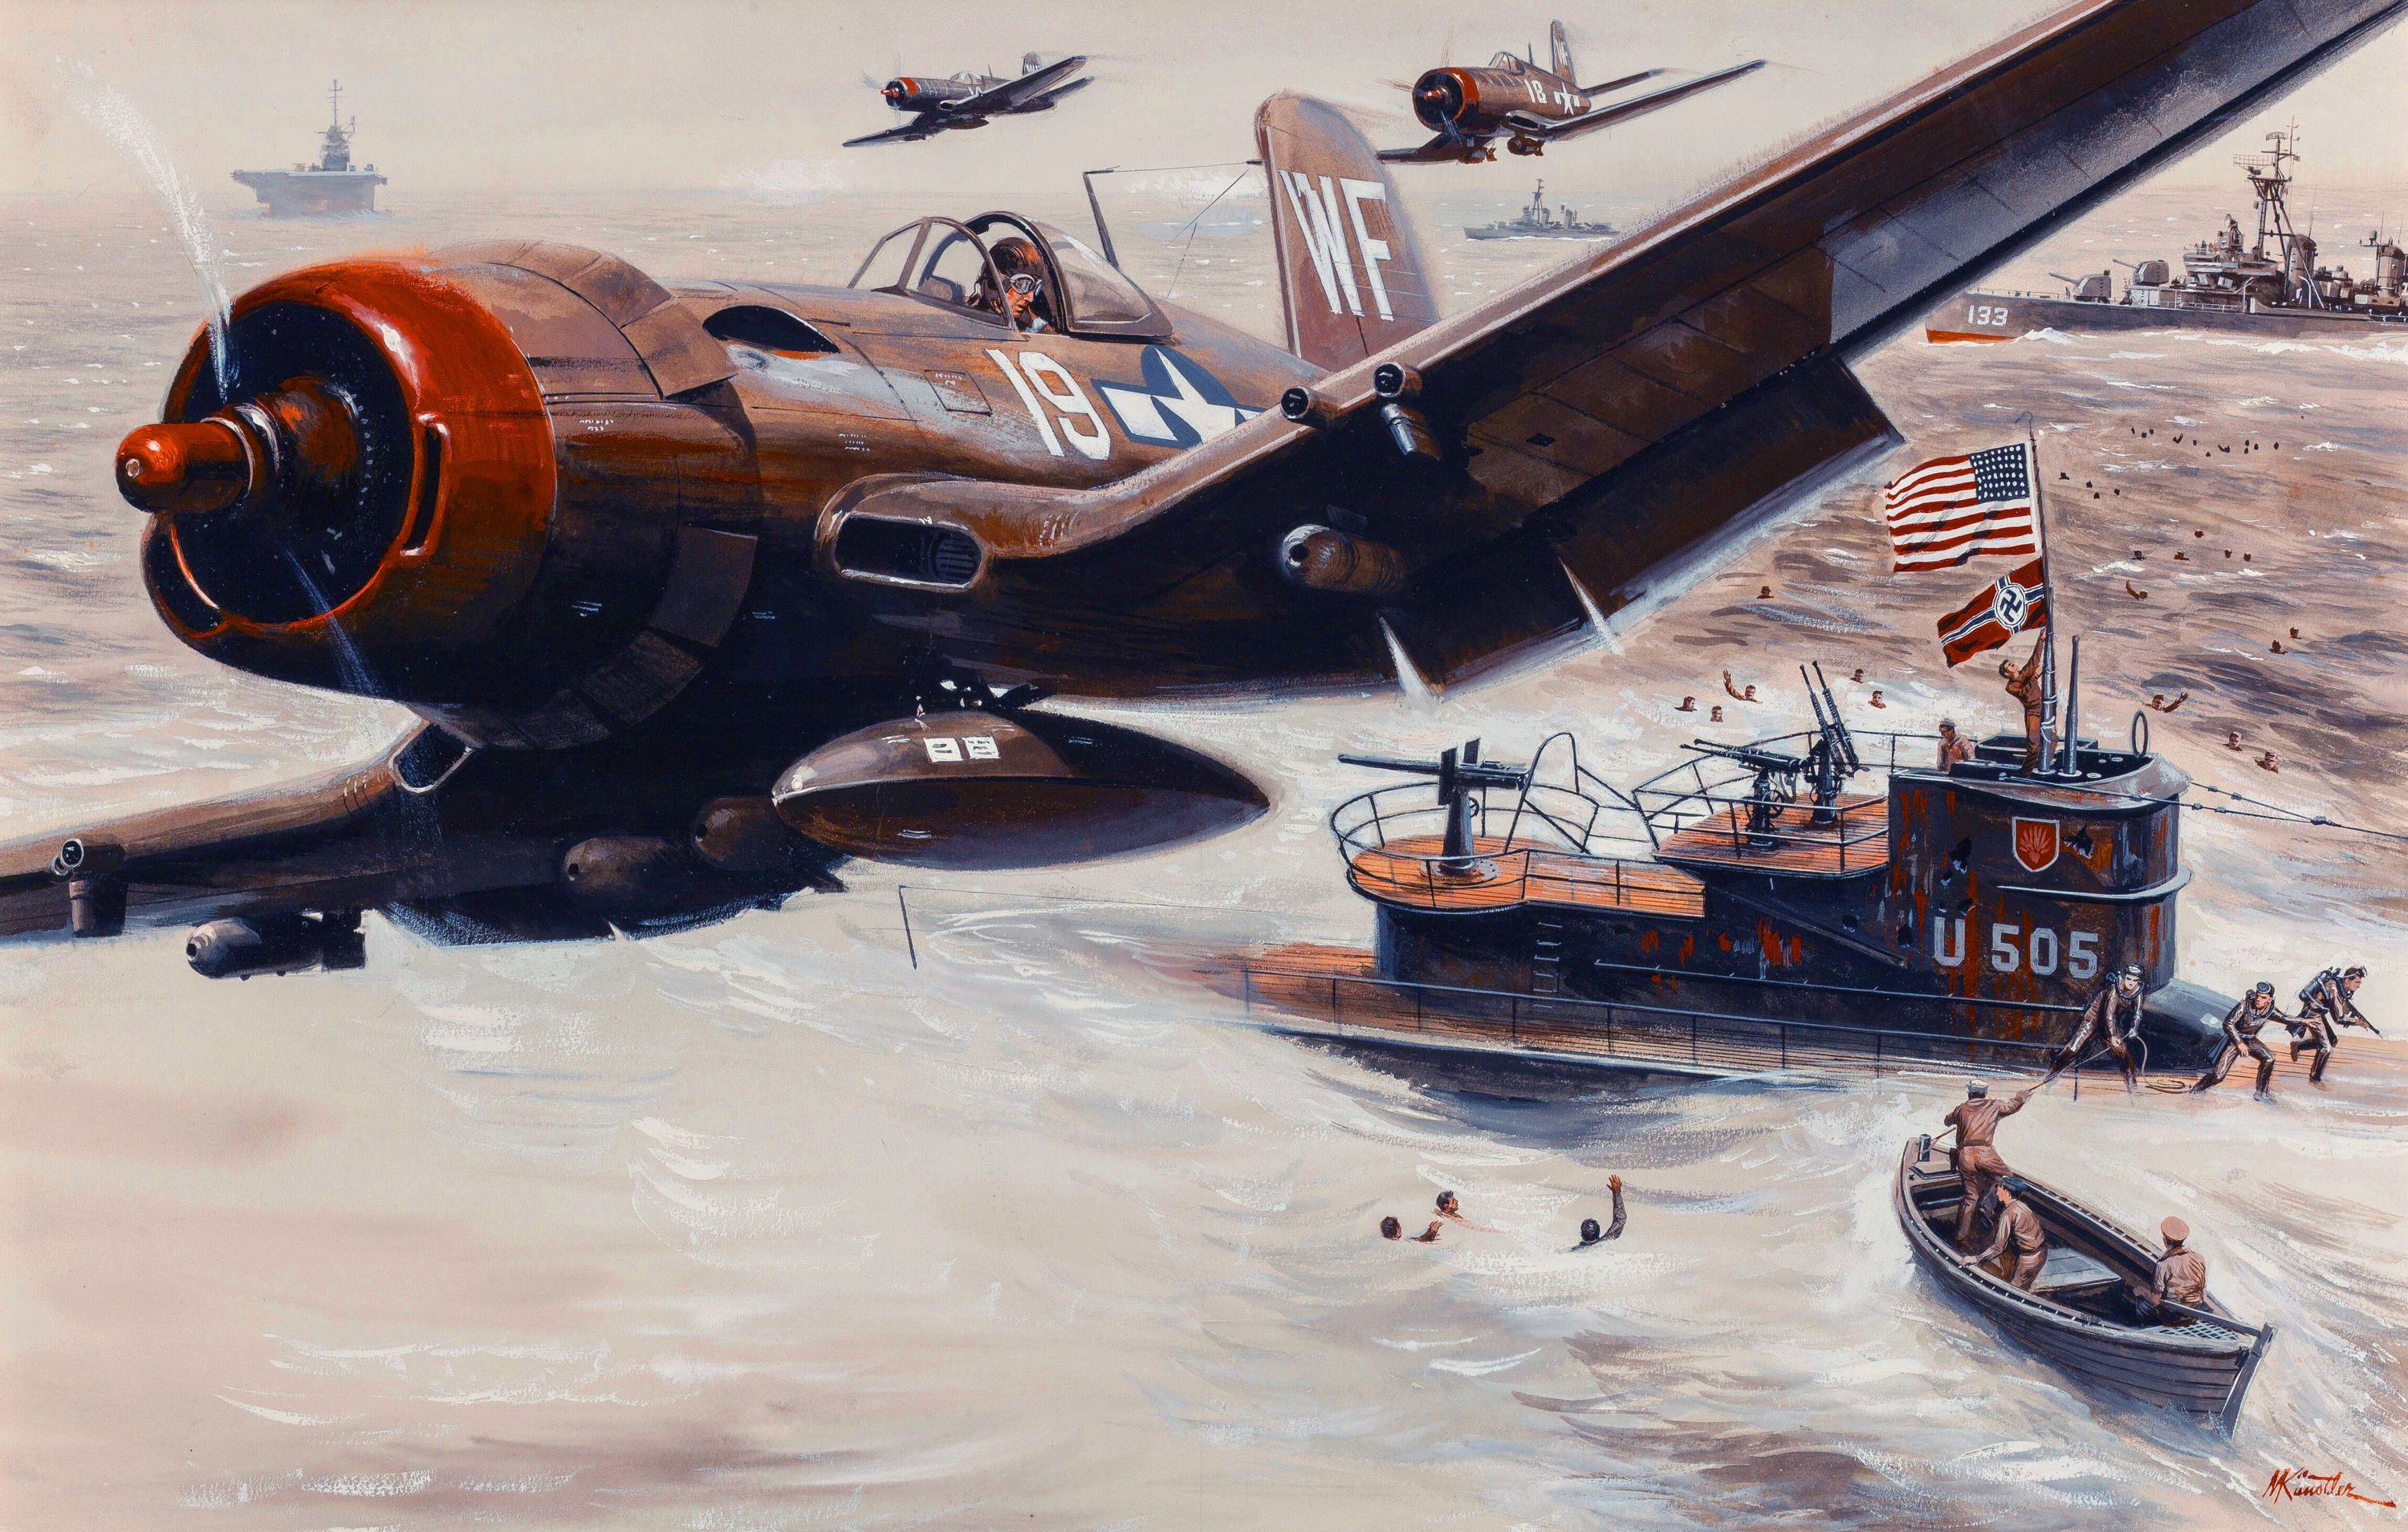 Fondos de Pantalla 3000x1909 Pintura Avións Submarinos Guerra Avión de caza  Mort Kunstler Ejército descargar imagenes